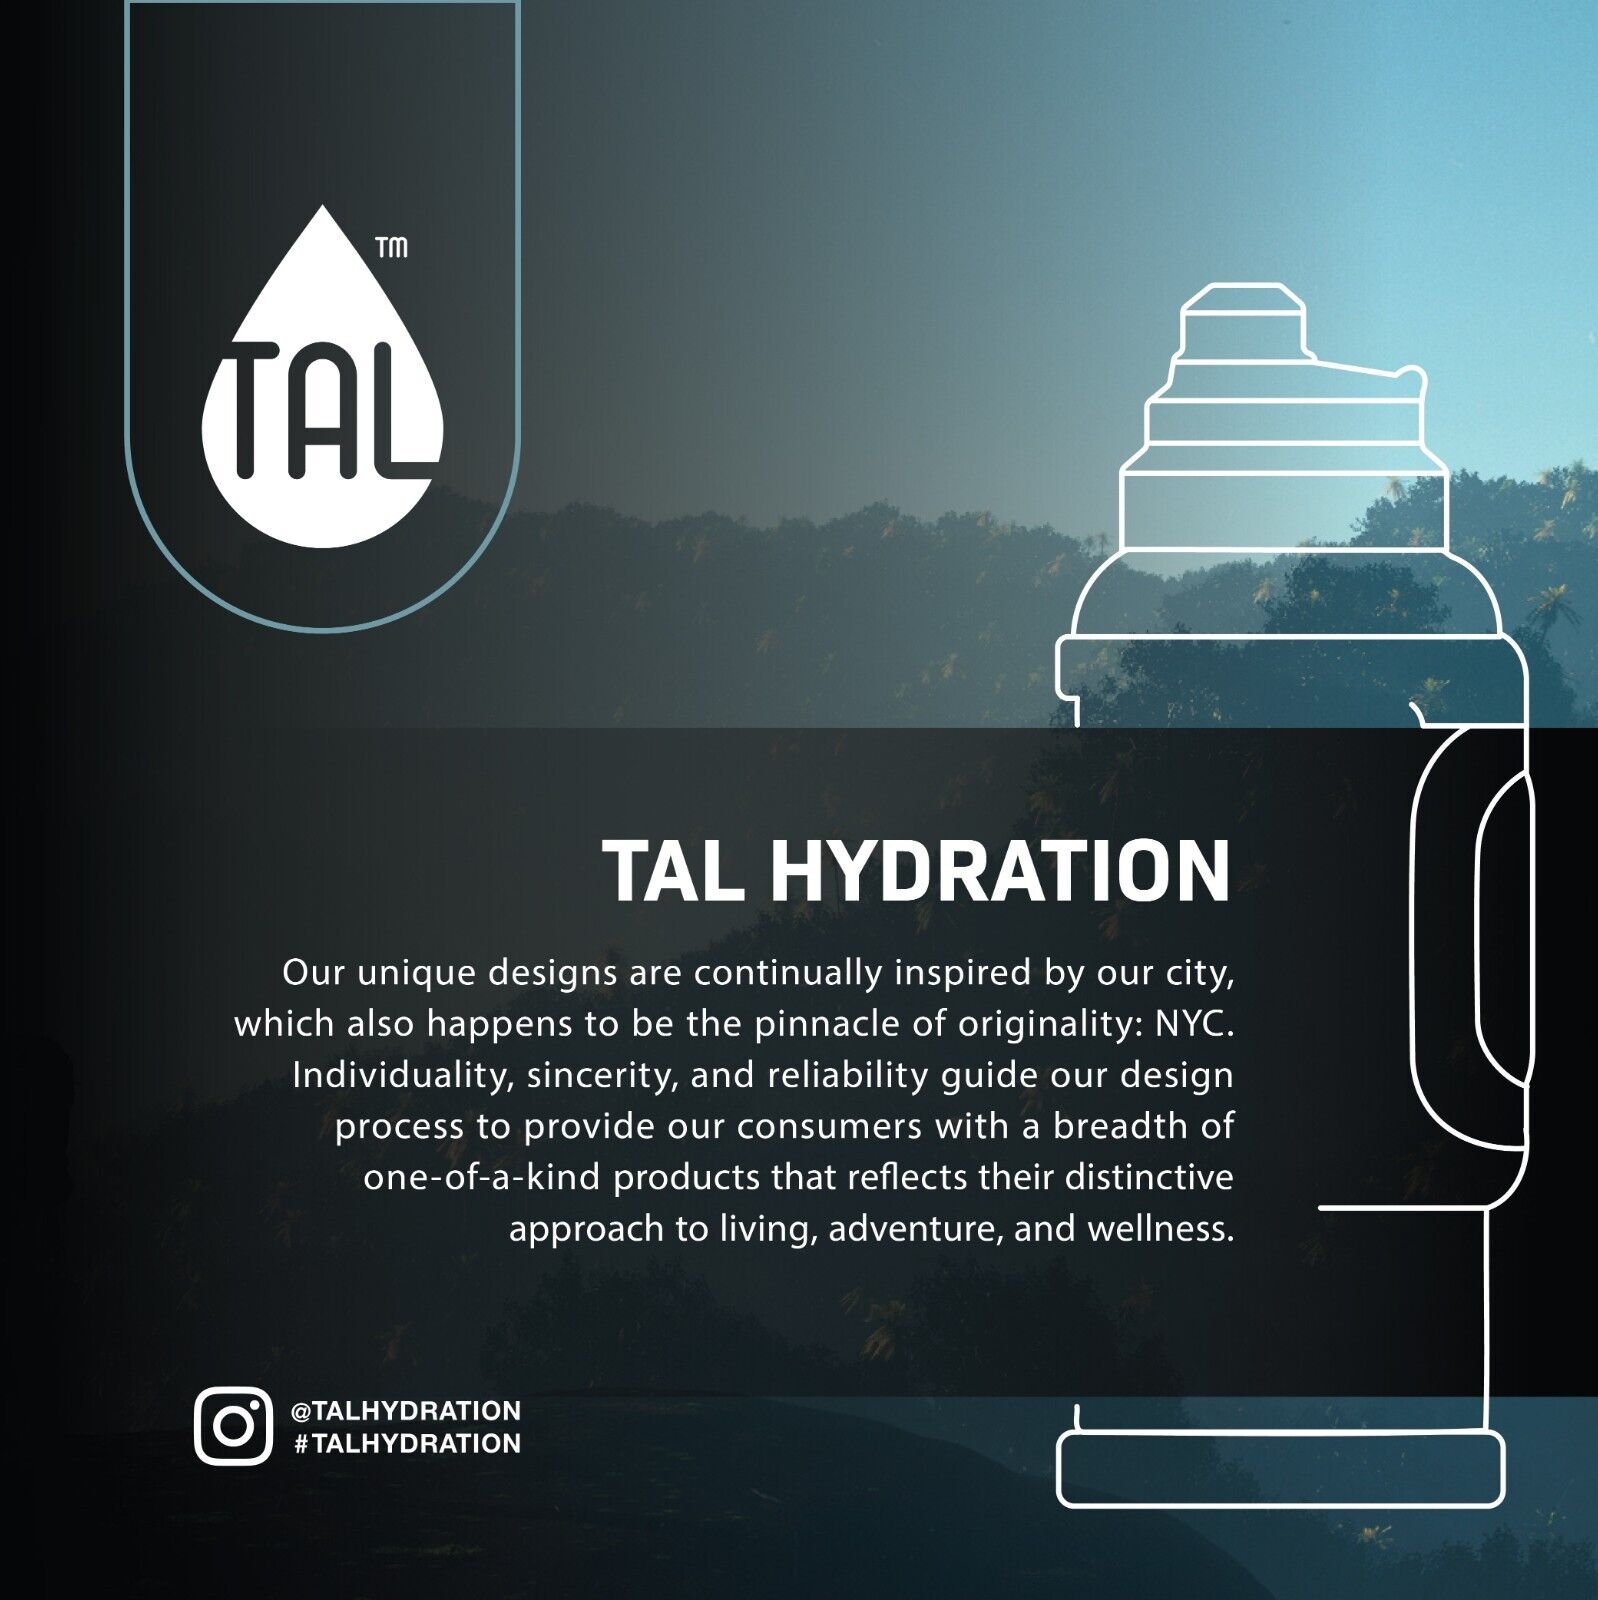 TAL Stainless Steel Zeus Water Bottle 3 Liter, Green Unbranded WM2216 - фотография #6